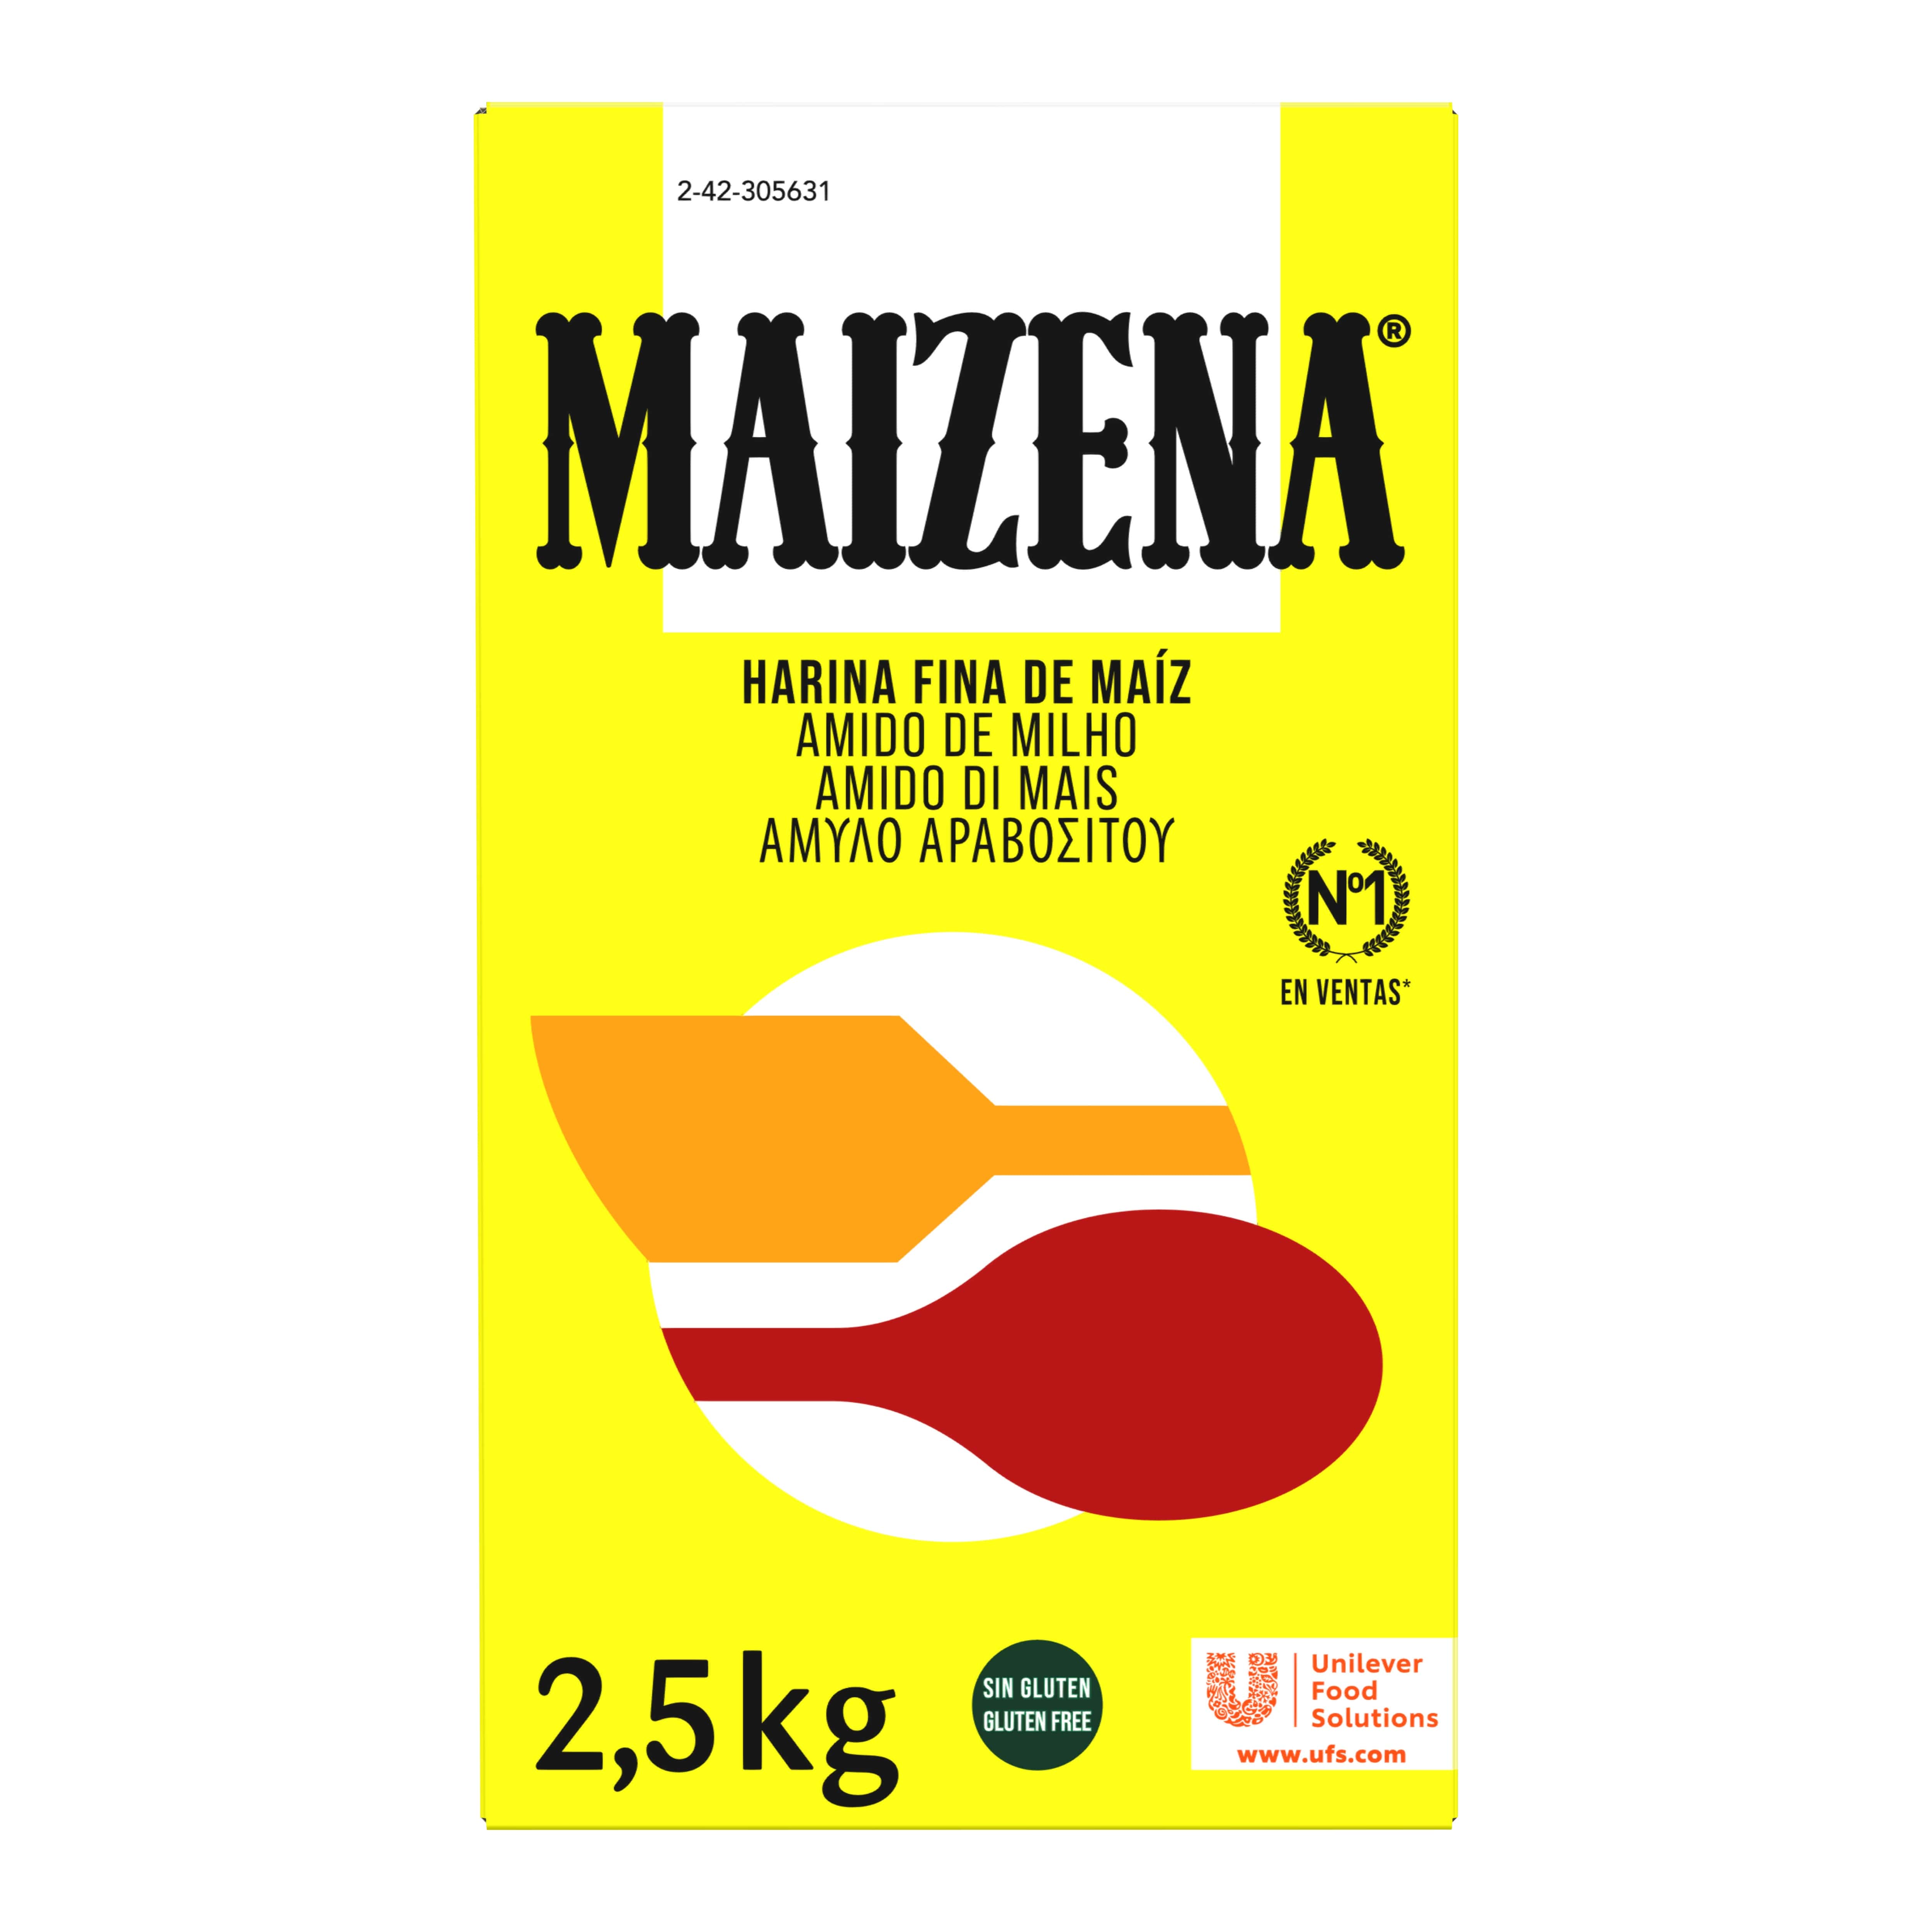 Maizena Amido di mais 2,5 Kg - Con l’amido di mais Maizena è possibile creare tante nuove ricette senza glutine, sia dolci che salate.